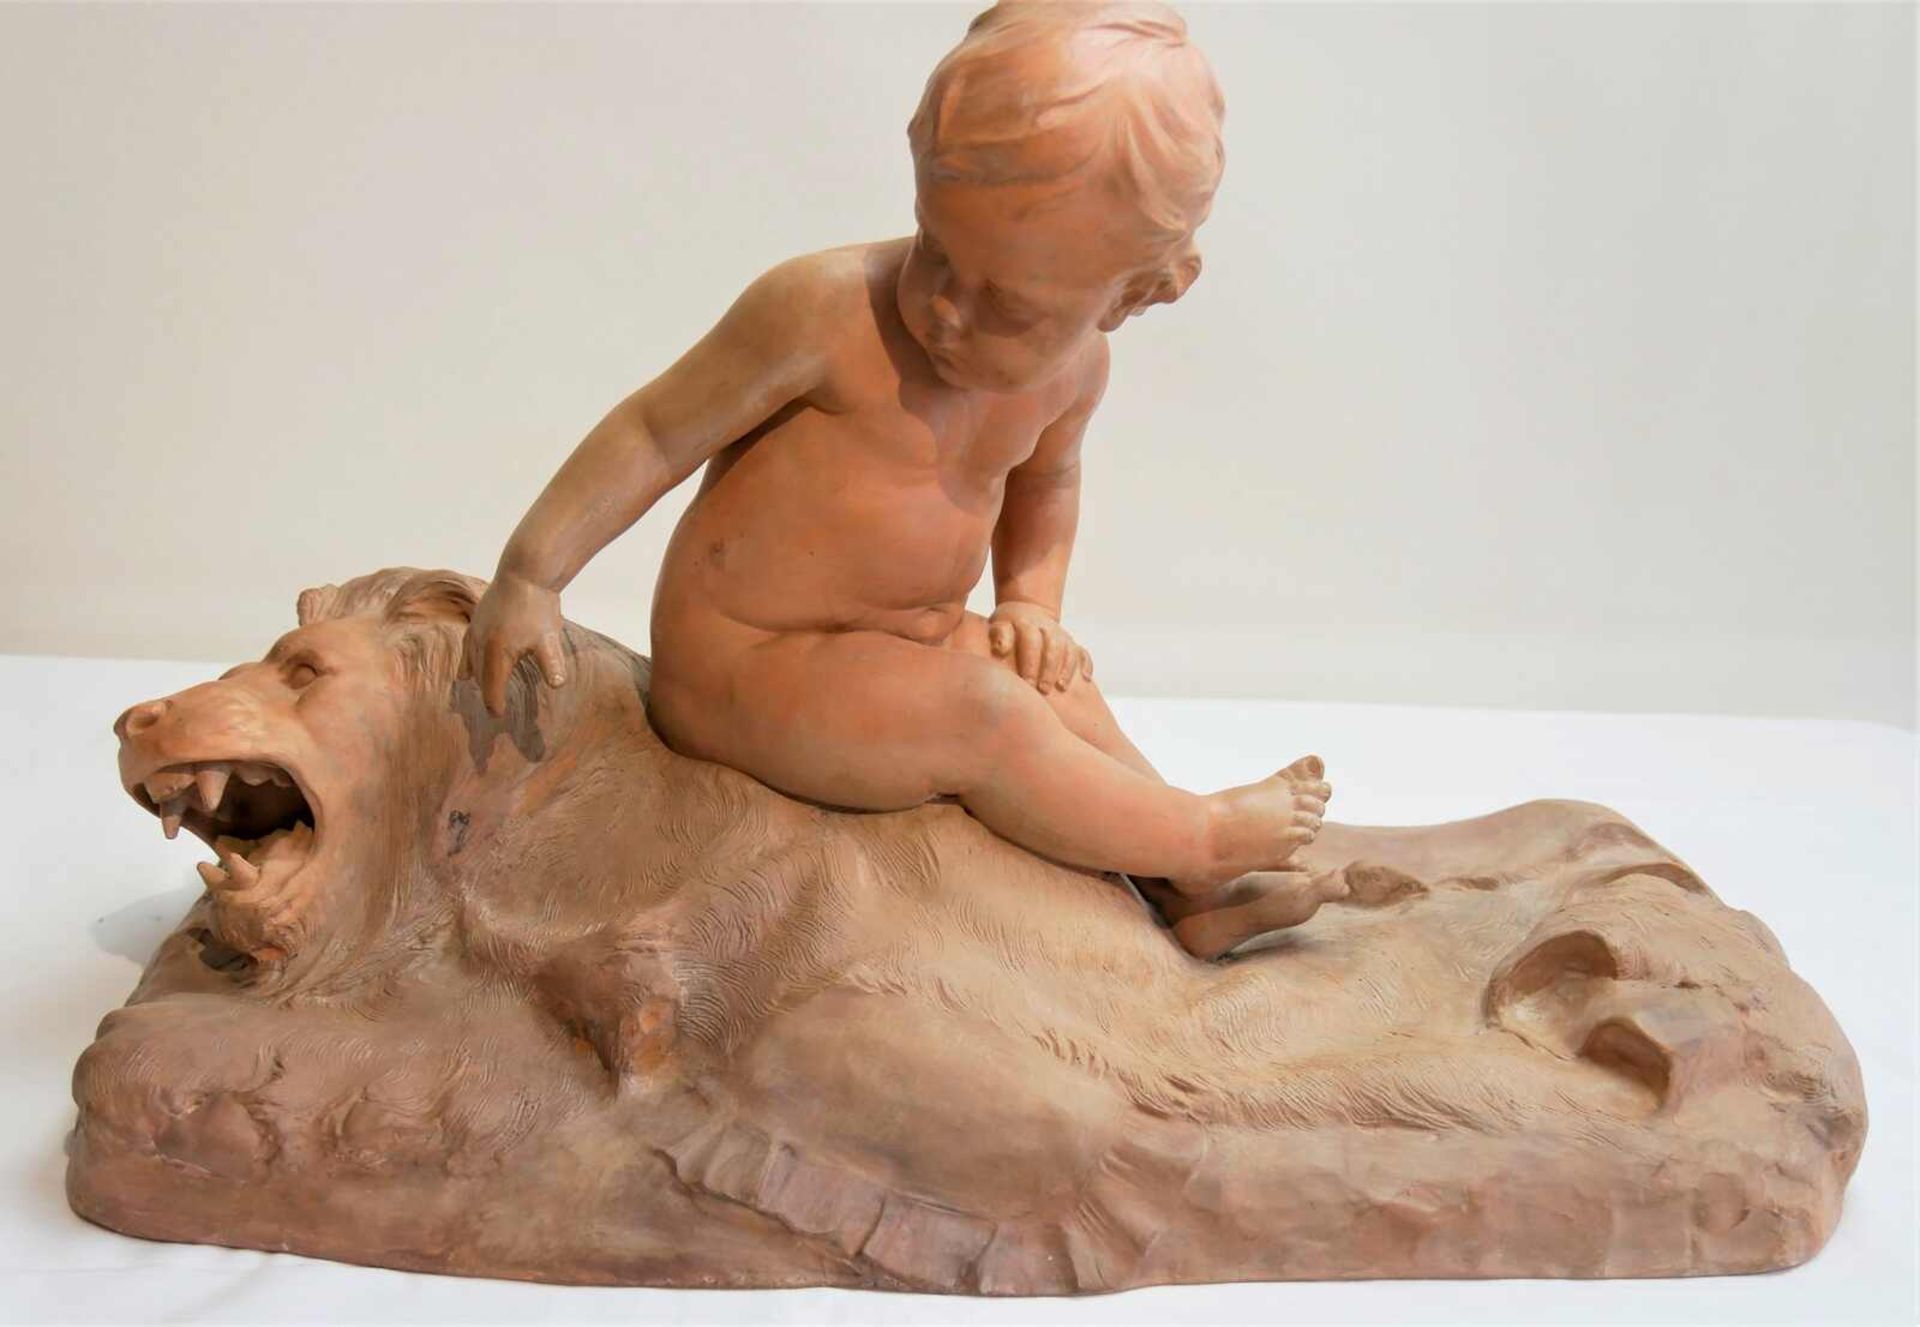 Skulptur von L. Dufrèns "Kind auf Löwe sitzend". Länge ca. 53 cm, Breite cl. 26 cm, Höhe ca. 33 cm